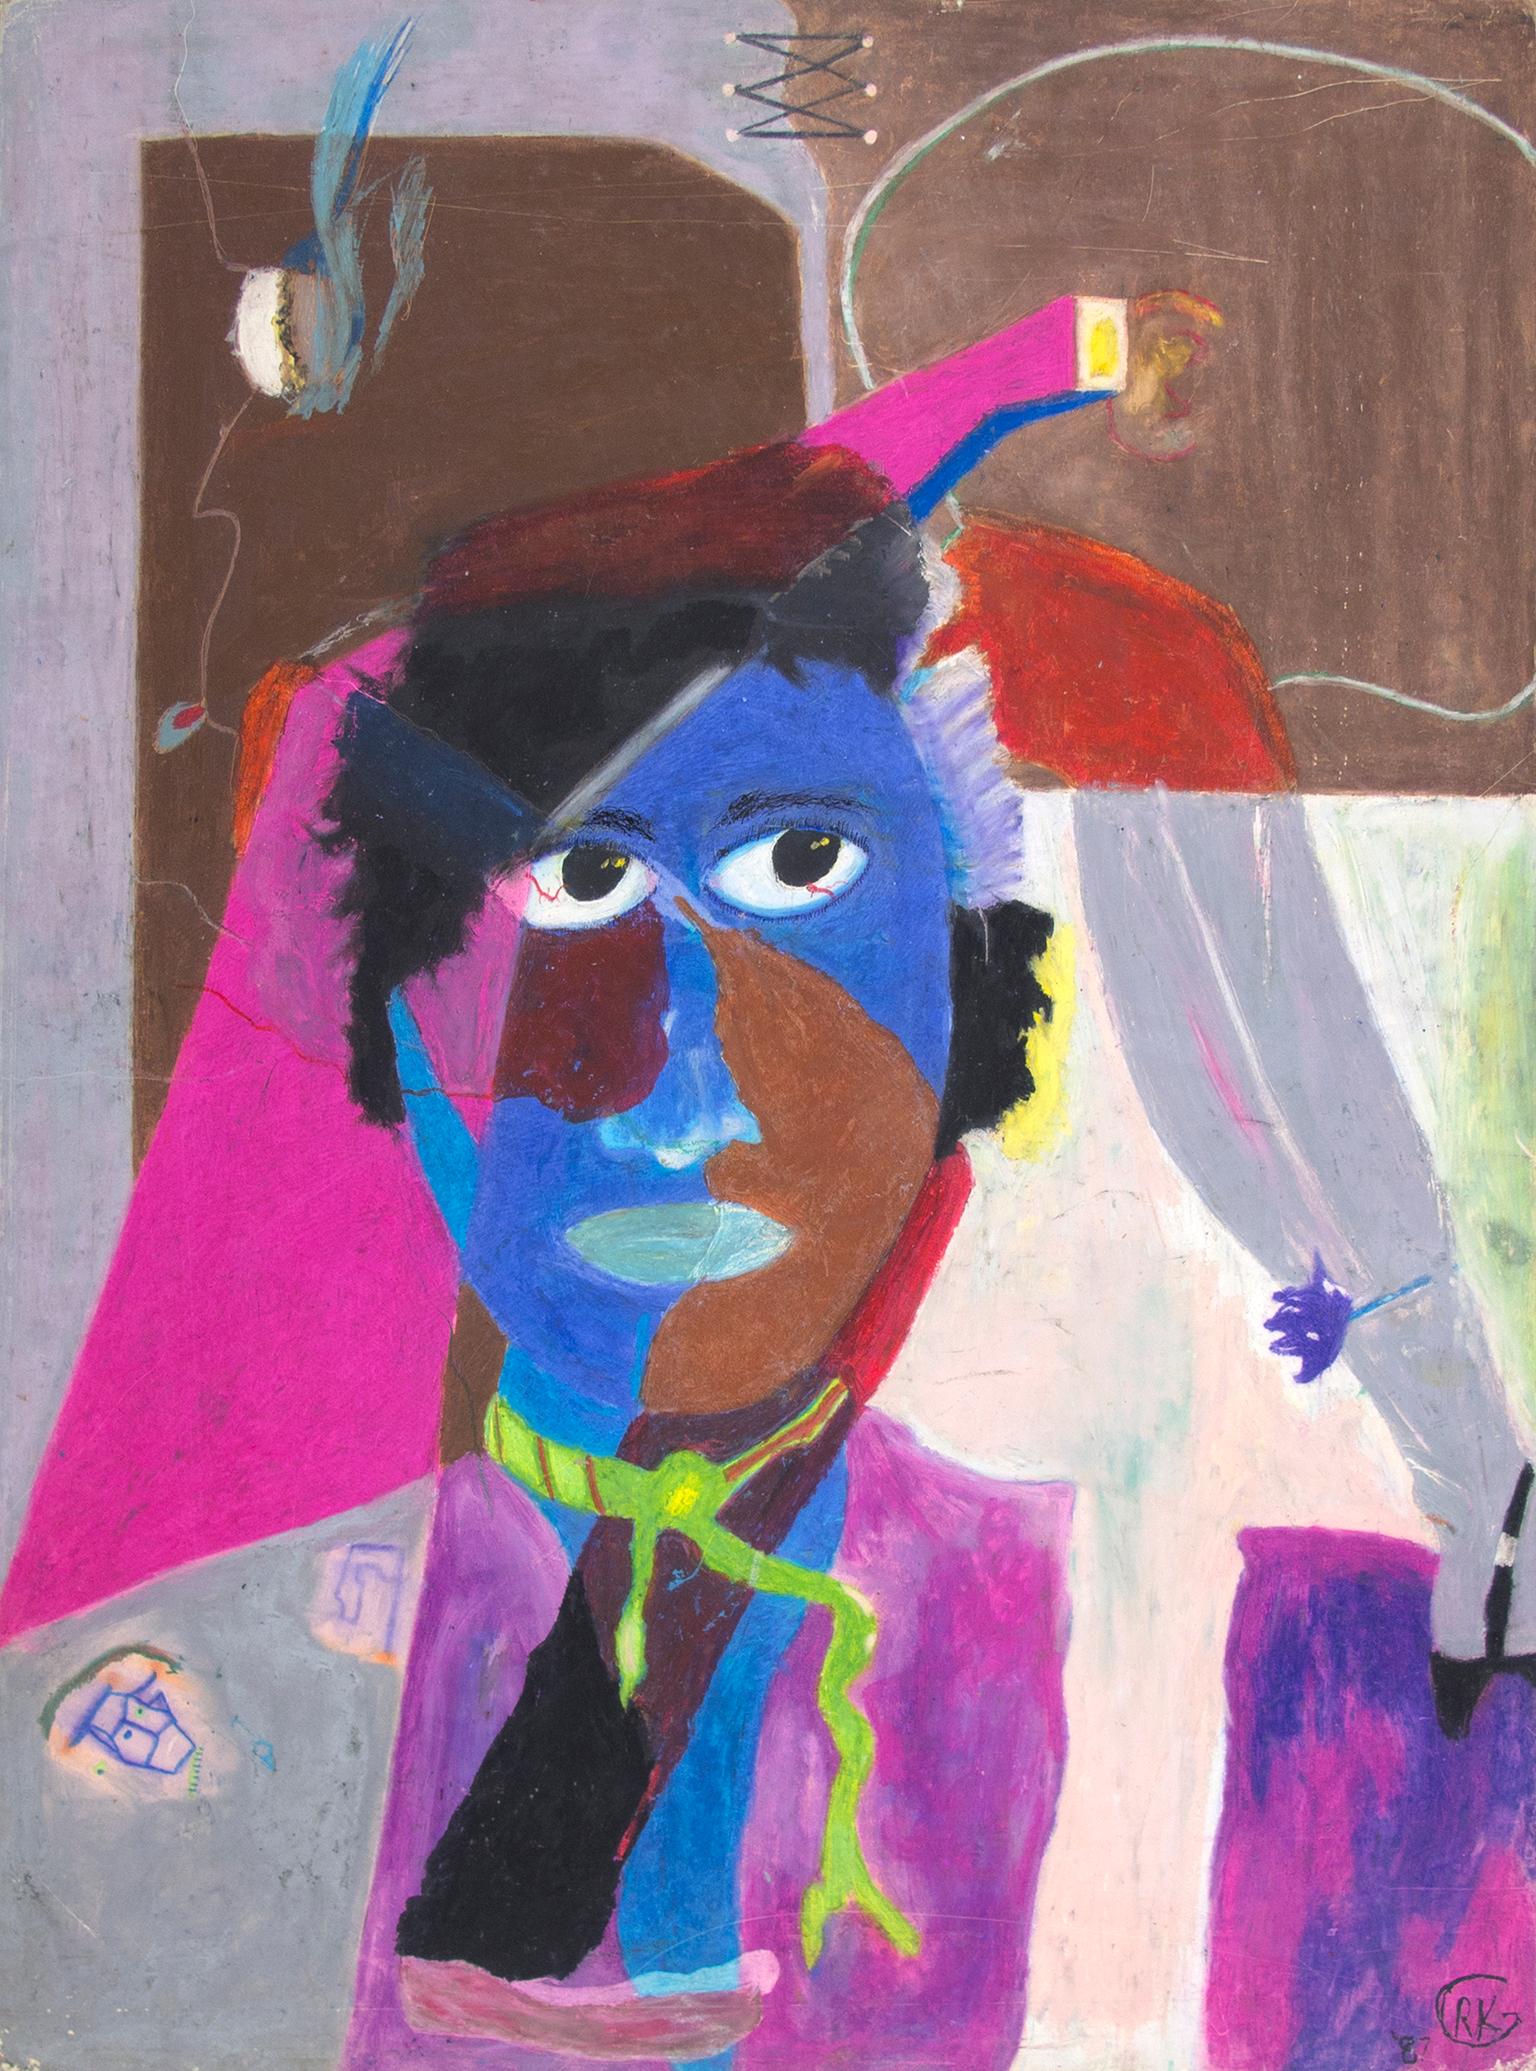 "Le son de la couleur" est un dessin original au pastel gras sur carton d'illustration de Reginald K. Gee. L'artiste a apposé ses initiales en bas à droite. Cette pièce présente une figure abstraite en rose, violet et bleu devant un fond brun et